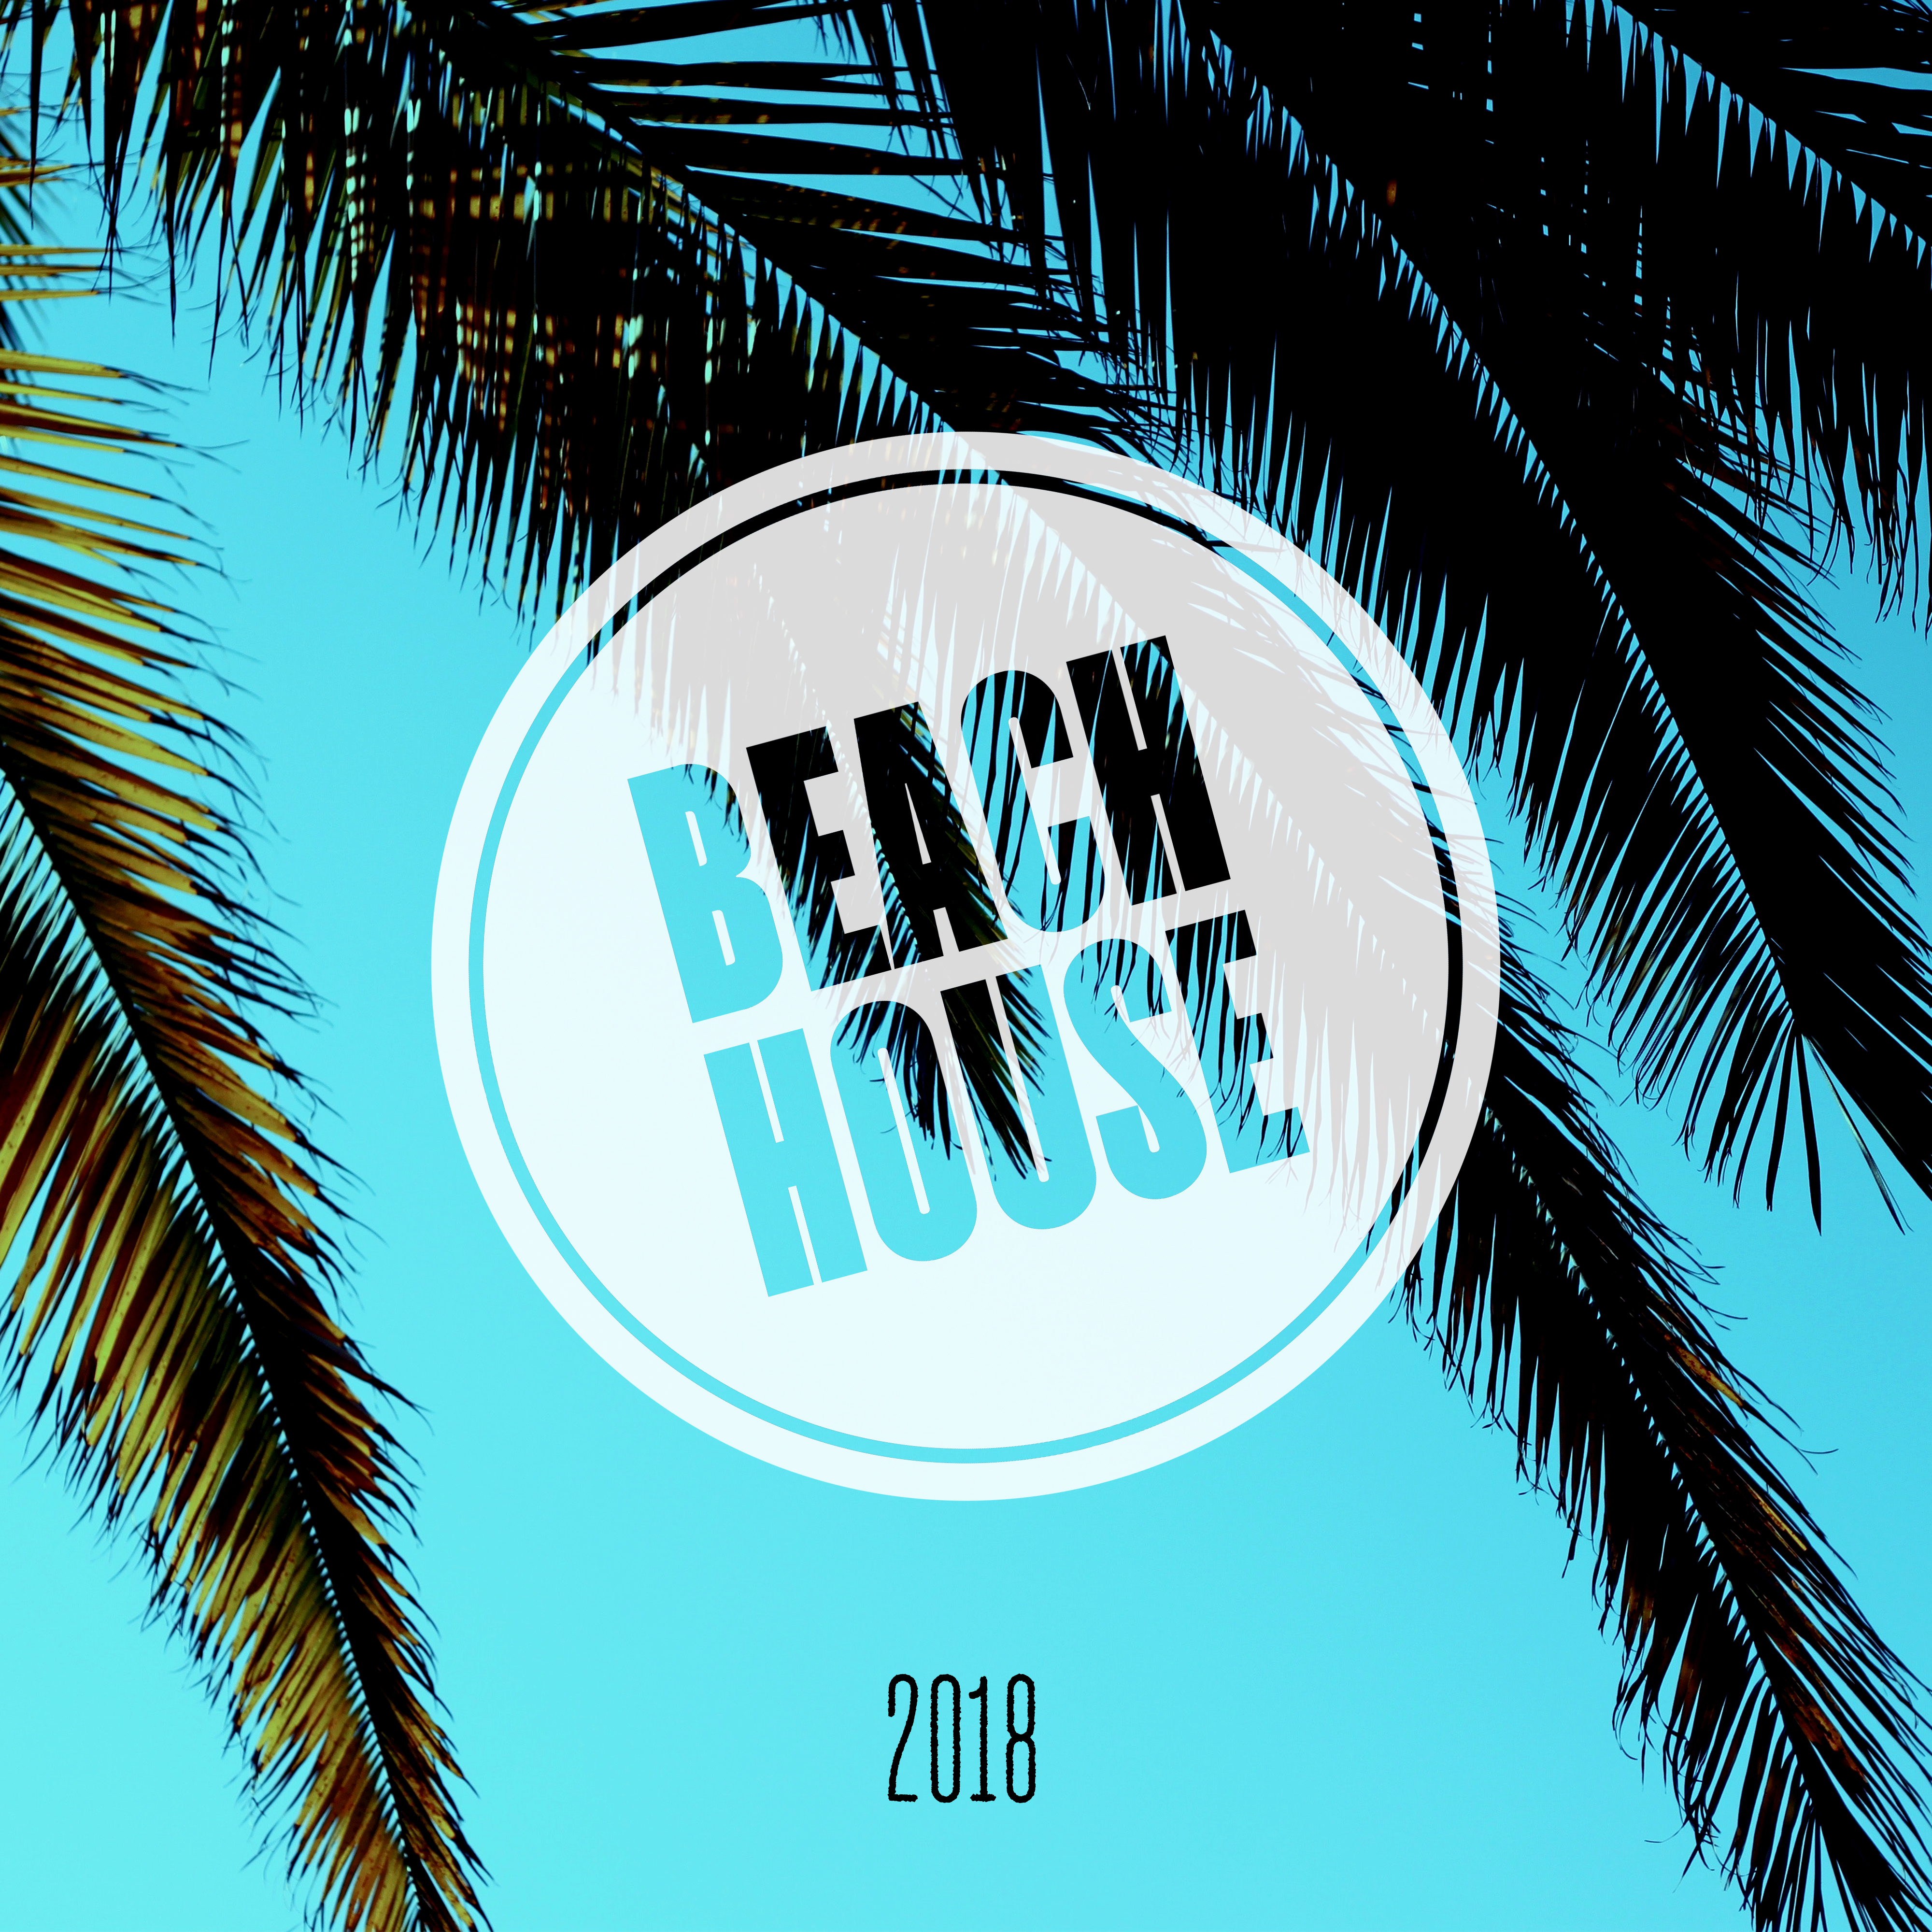 Beach House 2018